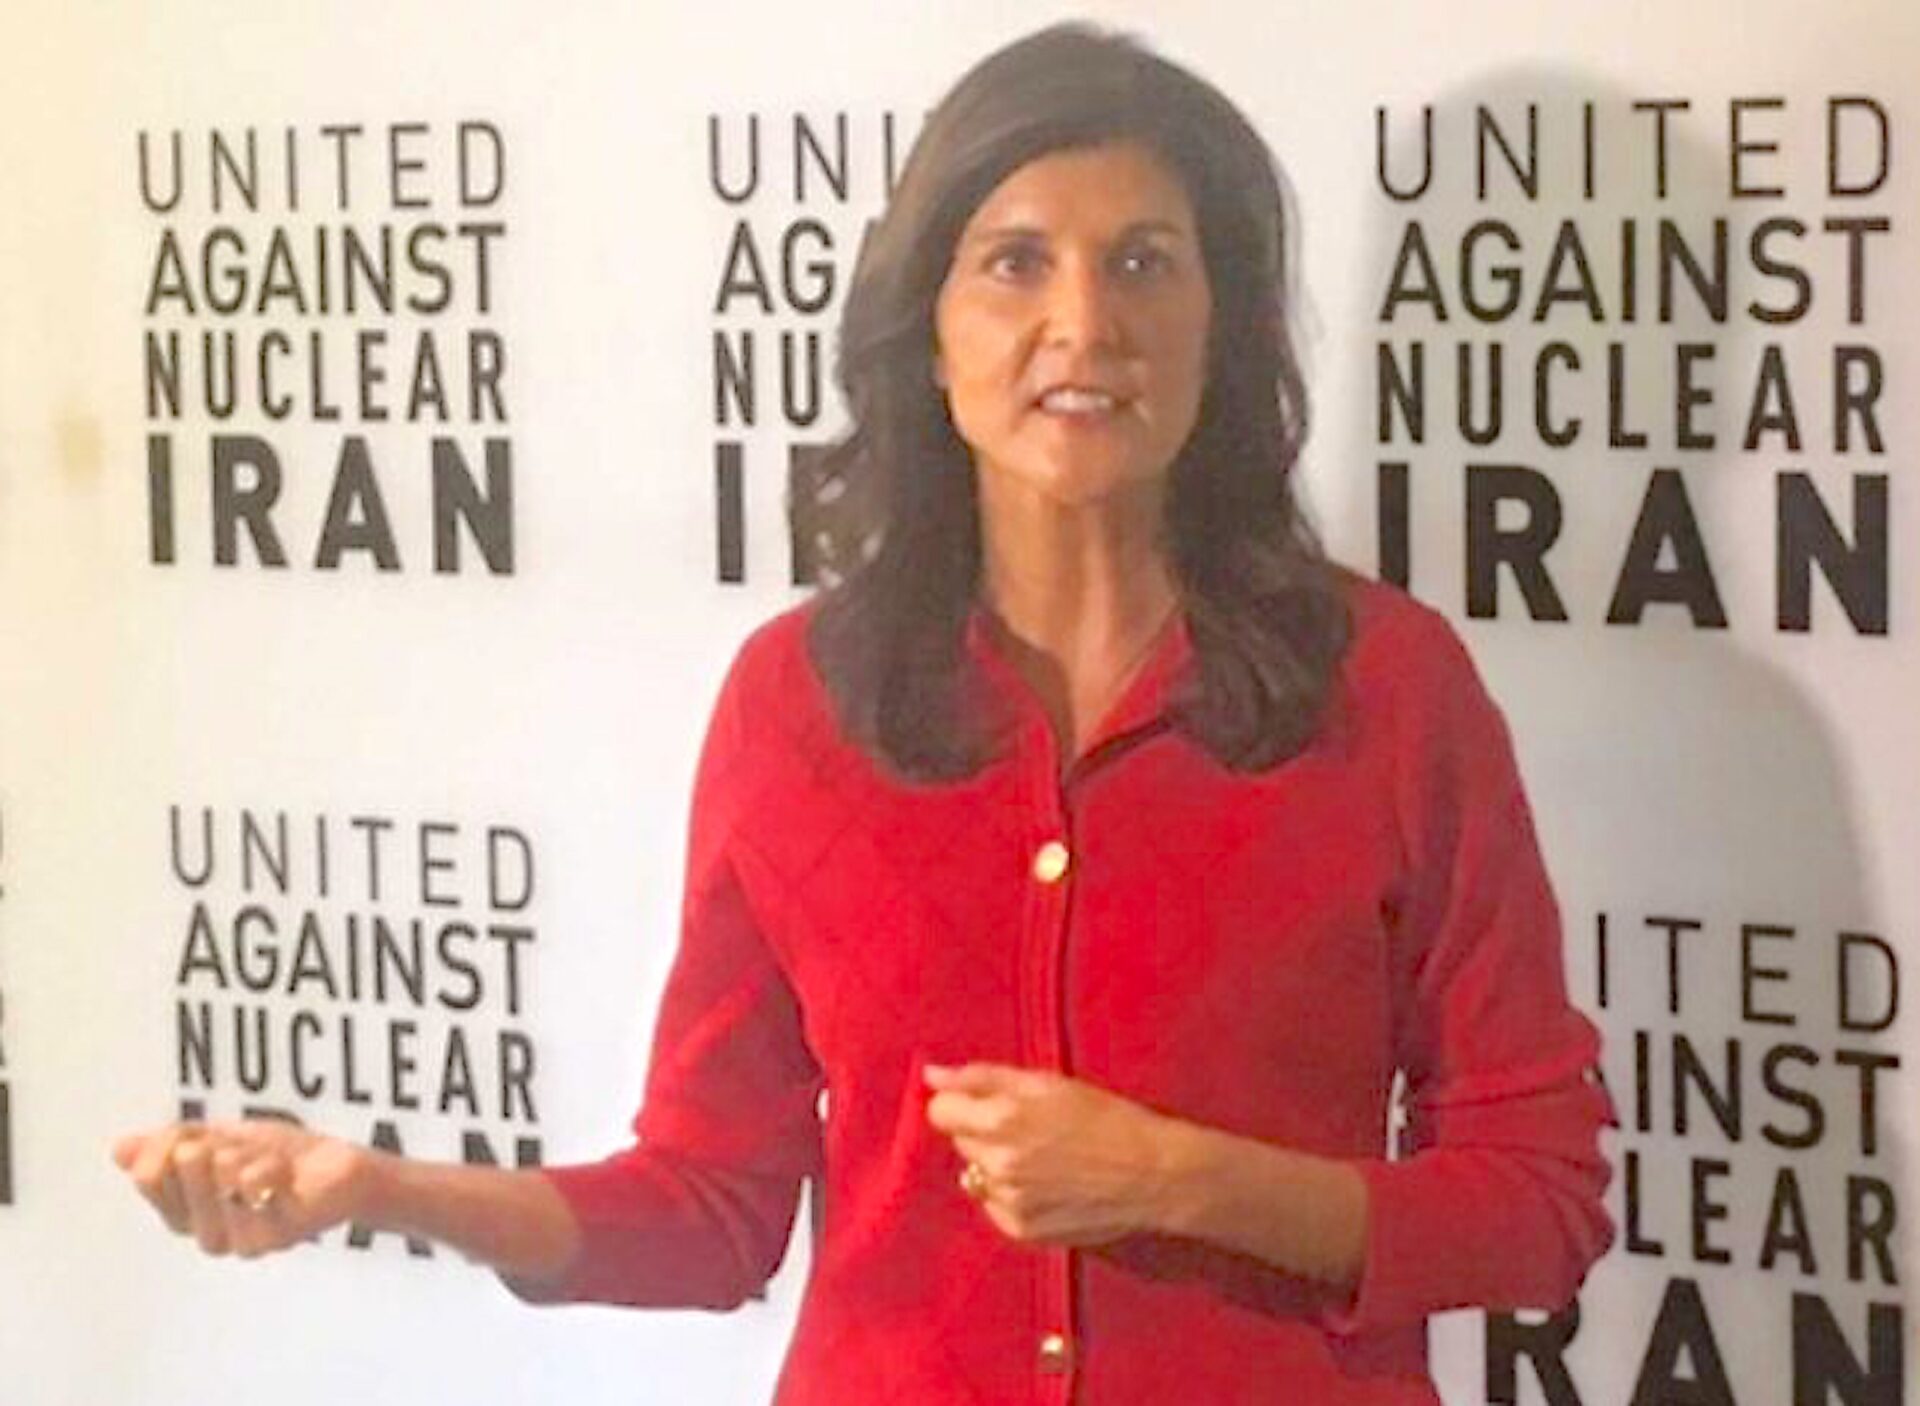 âTreat Iran like pariah:â Haley hits Biden team for relentless pursuit of nuclear deal